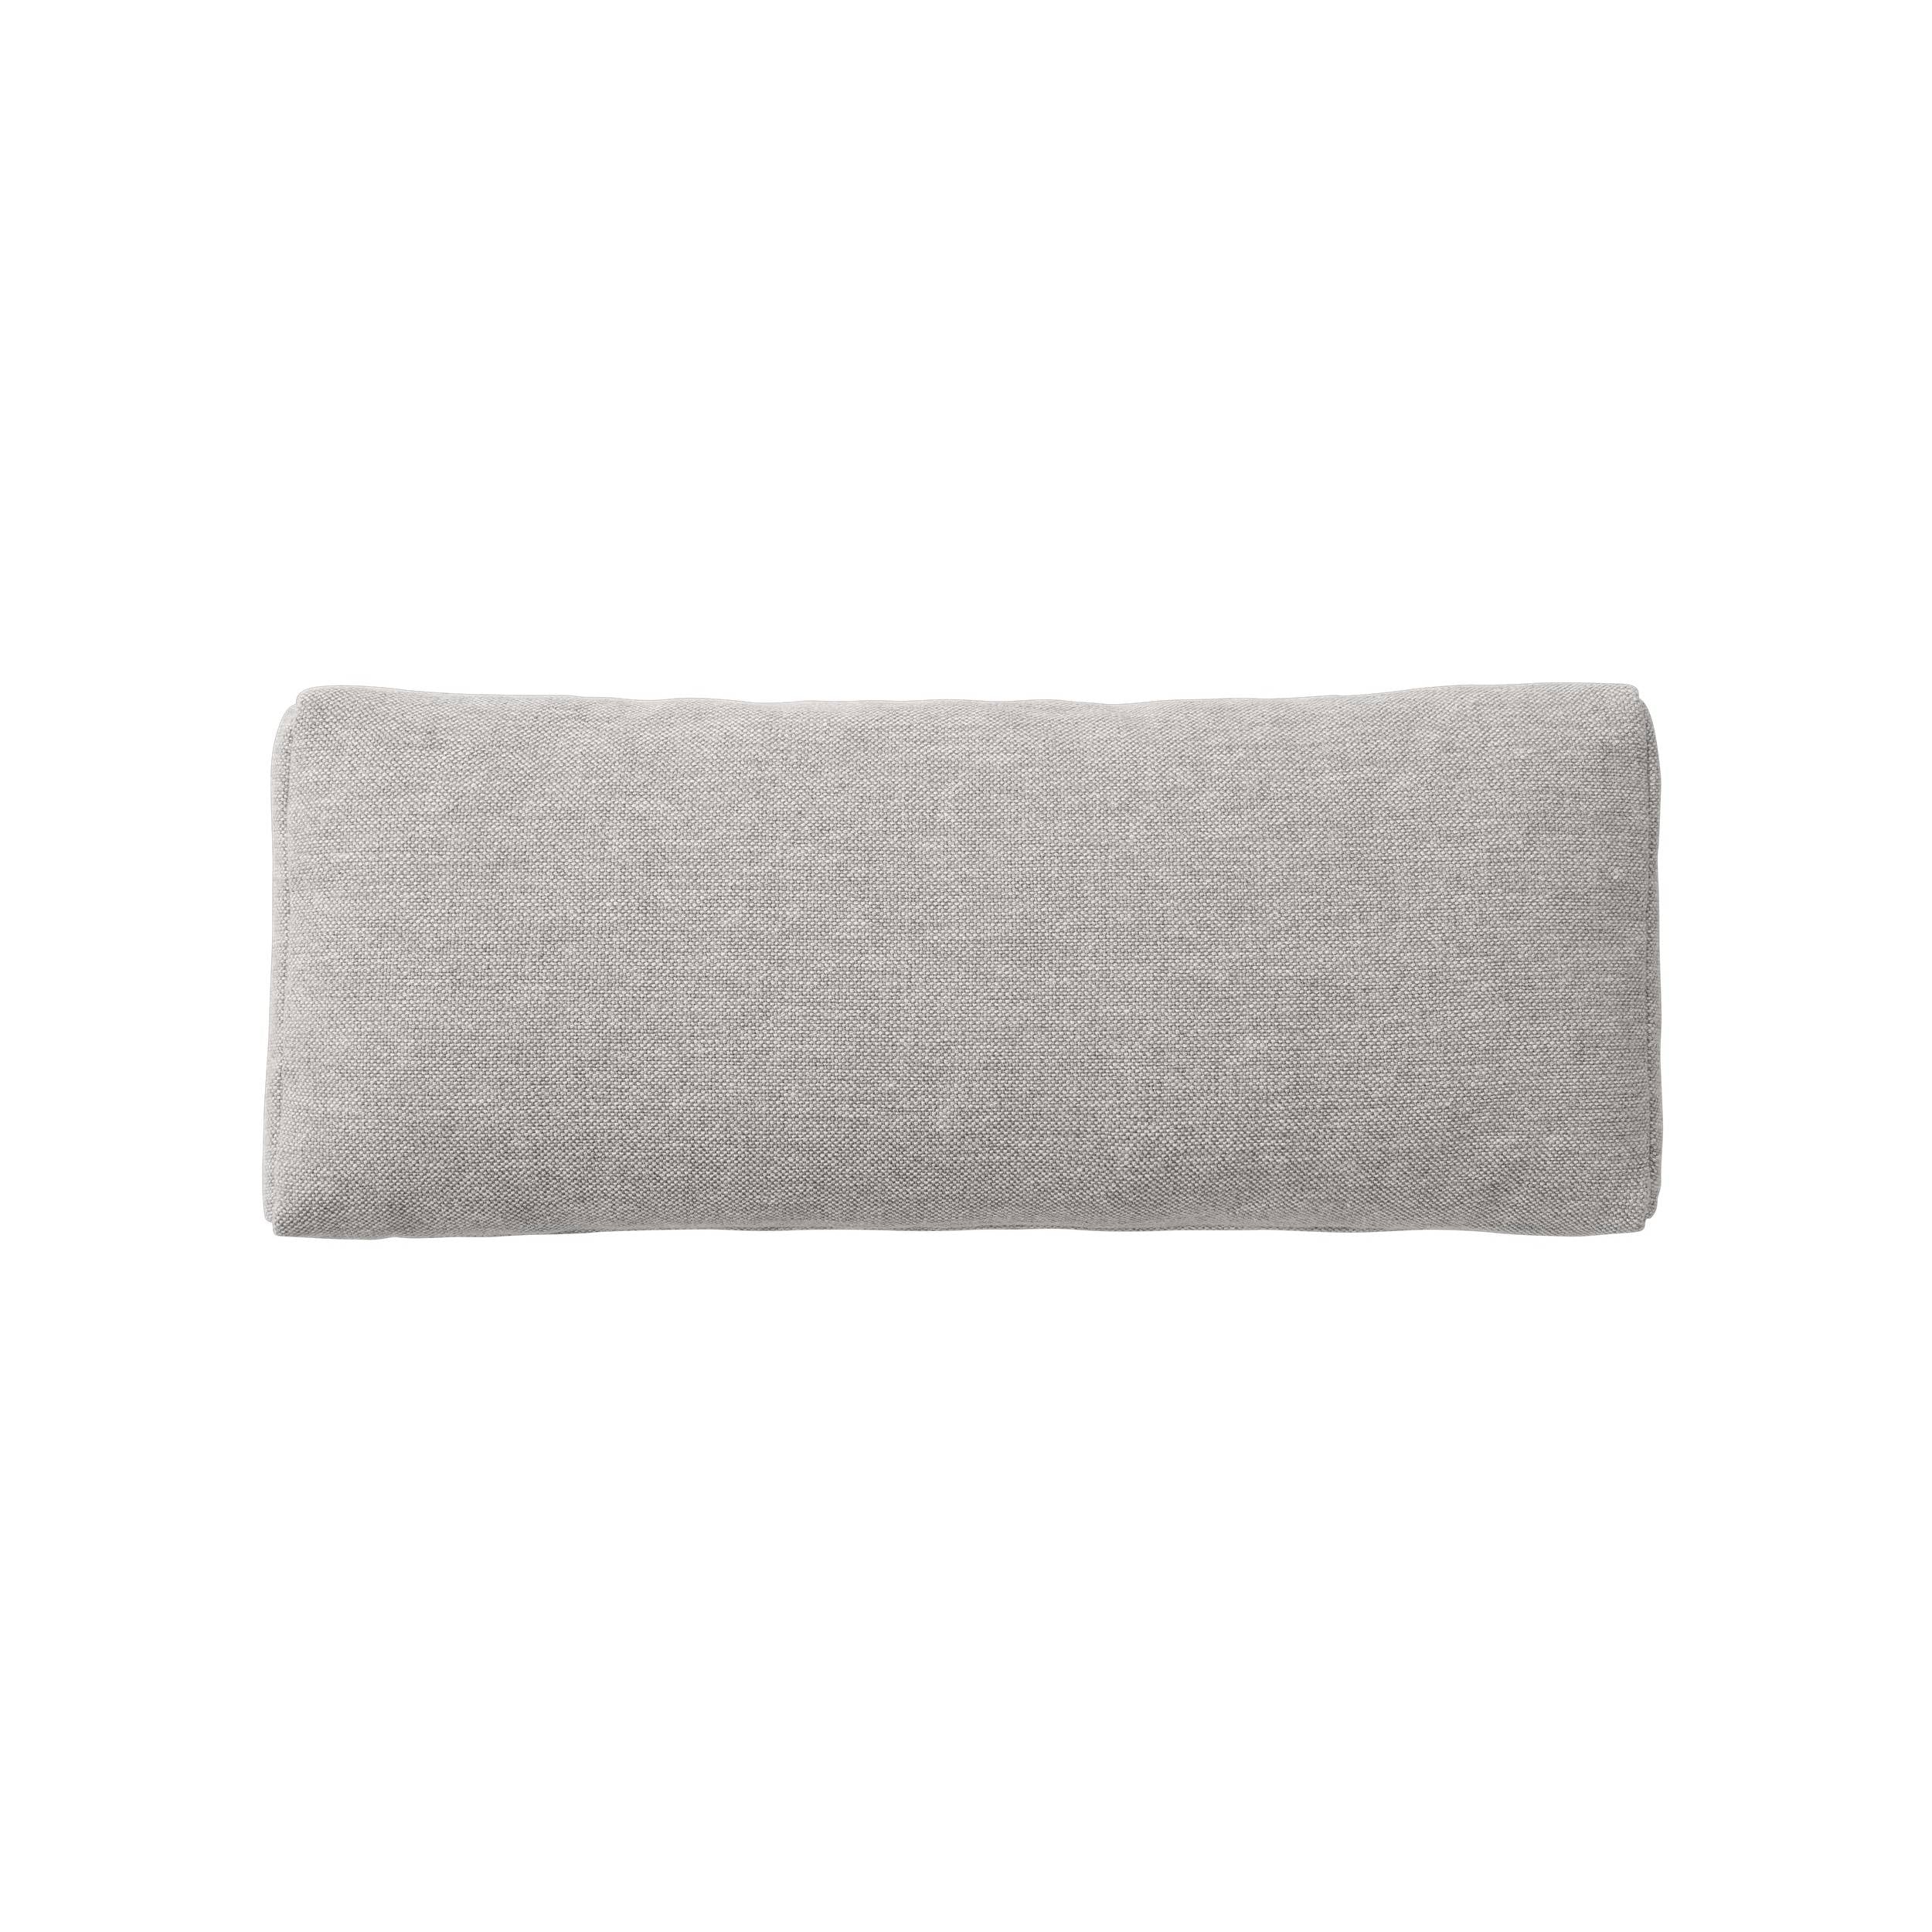 Connect Soft Sofa Modules: Cushion + Clay 12